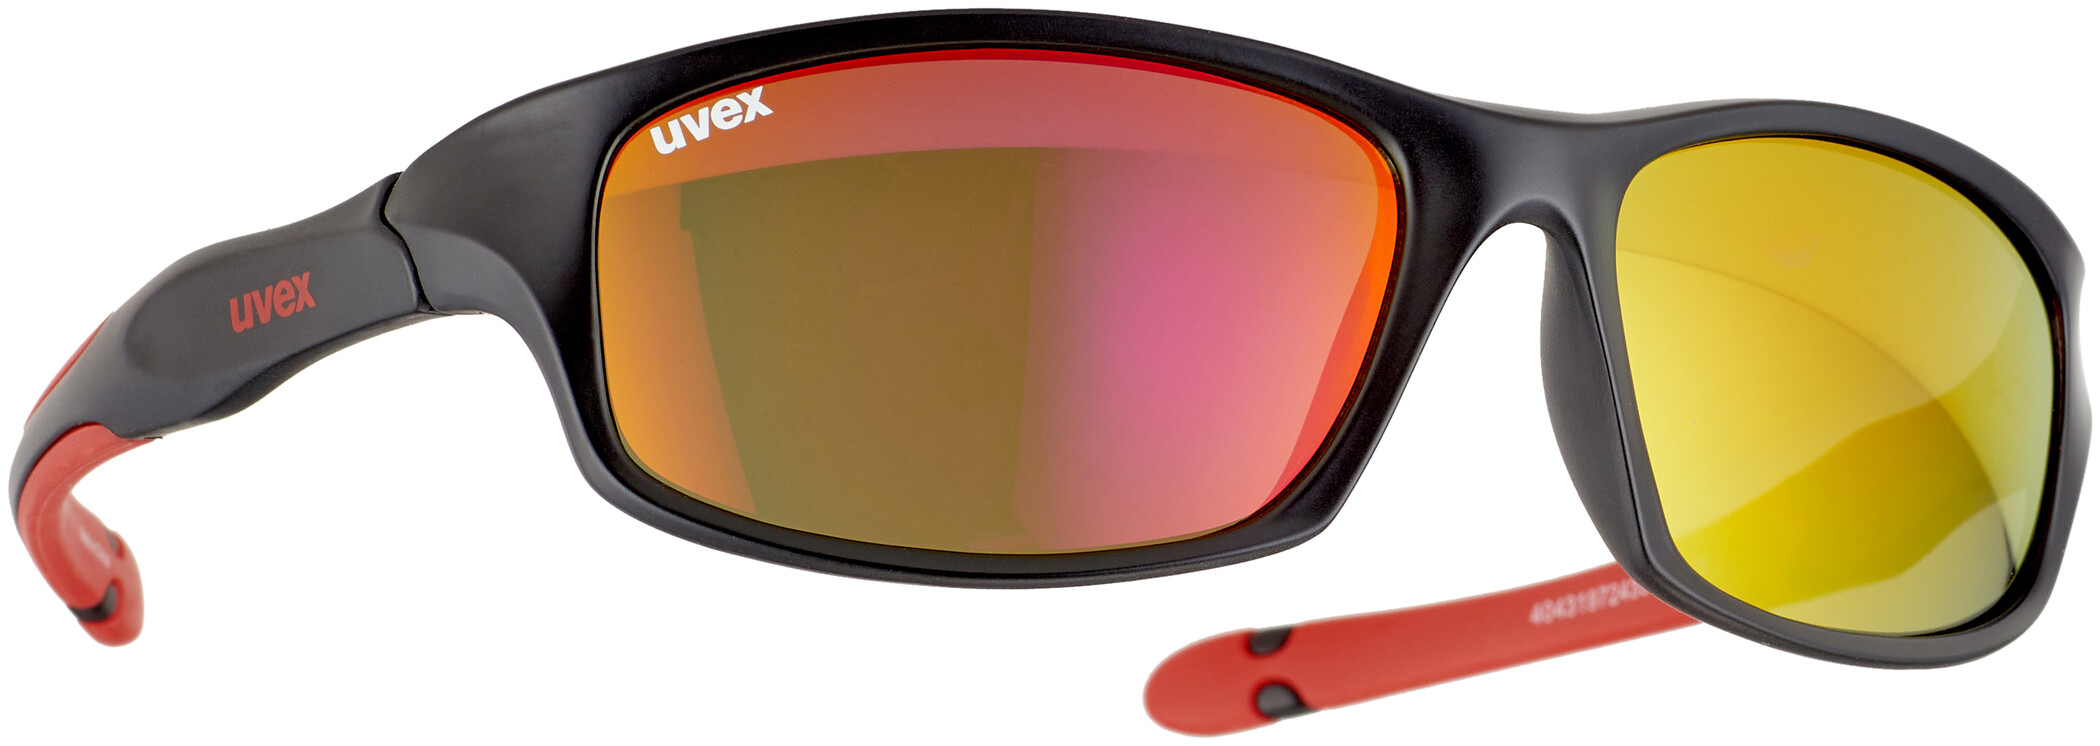 Uvex Sport Style 511 Occhiali Sportivi Bambini Occhiali Da Sole UV-Occhiali di protezione s53202789 